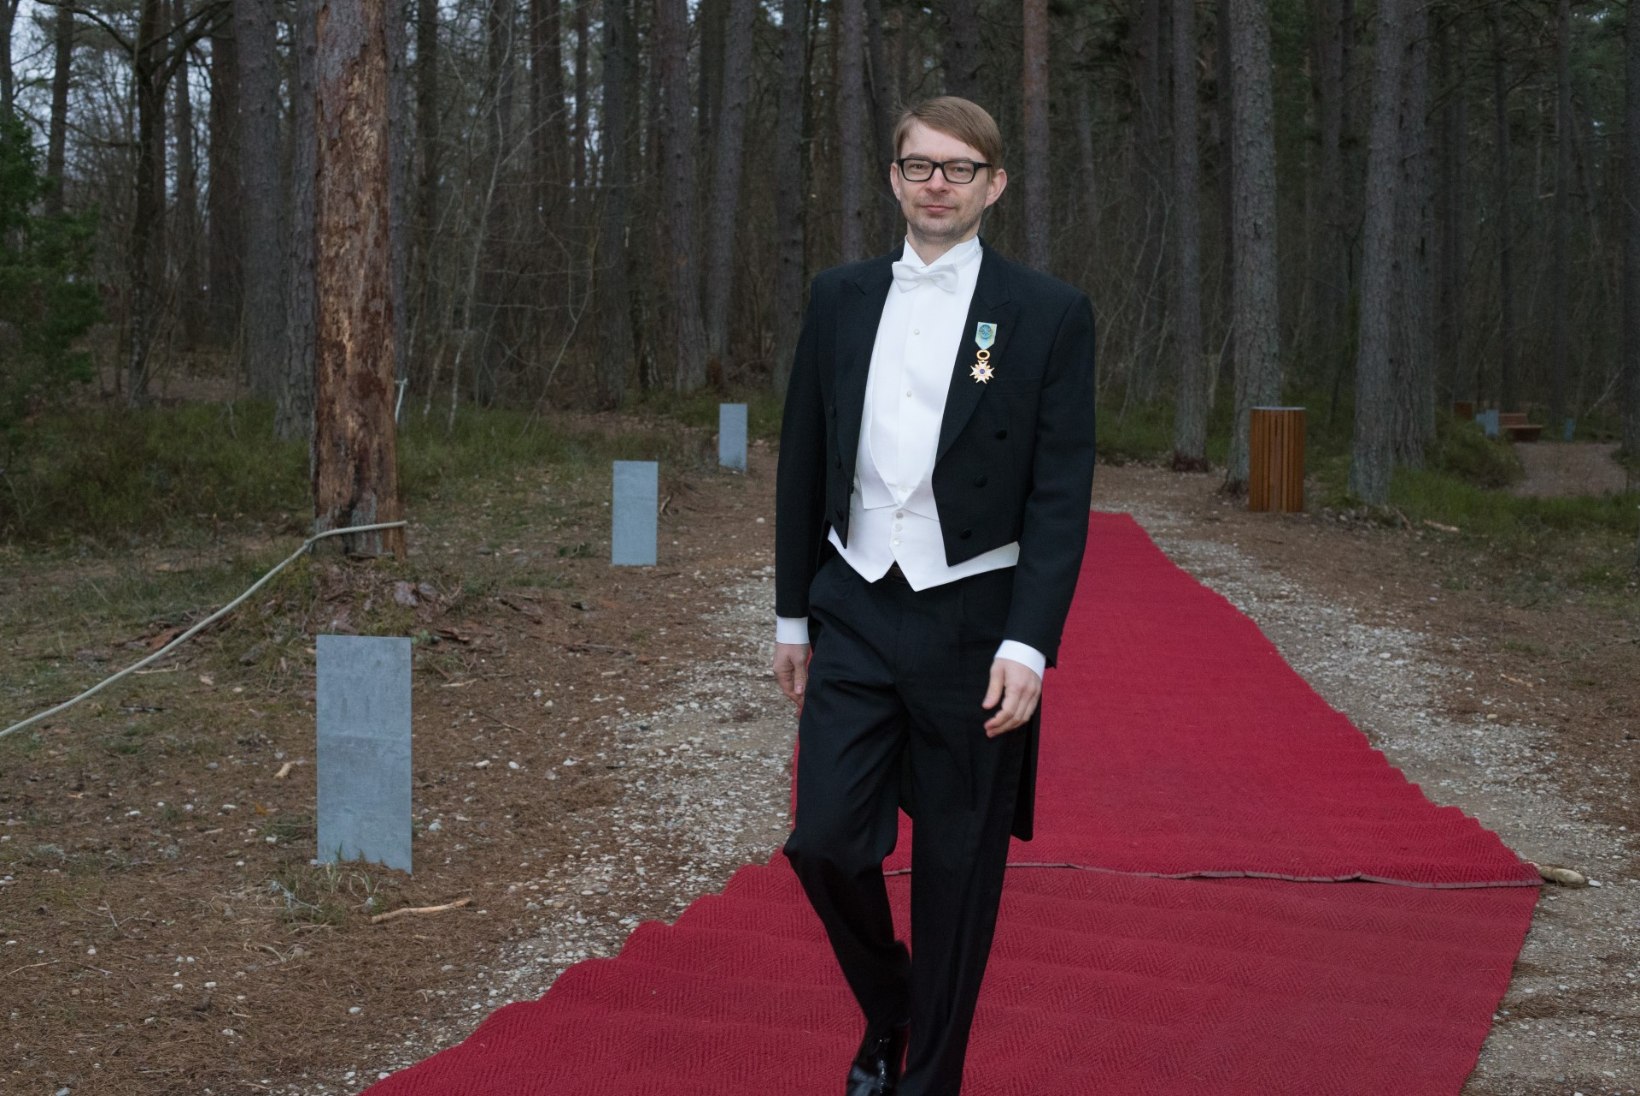 GALERII | Läti presidendipaar õhtustas koos Eesti riigipeadega Arvo Pärdi keskuses